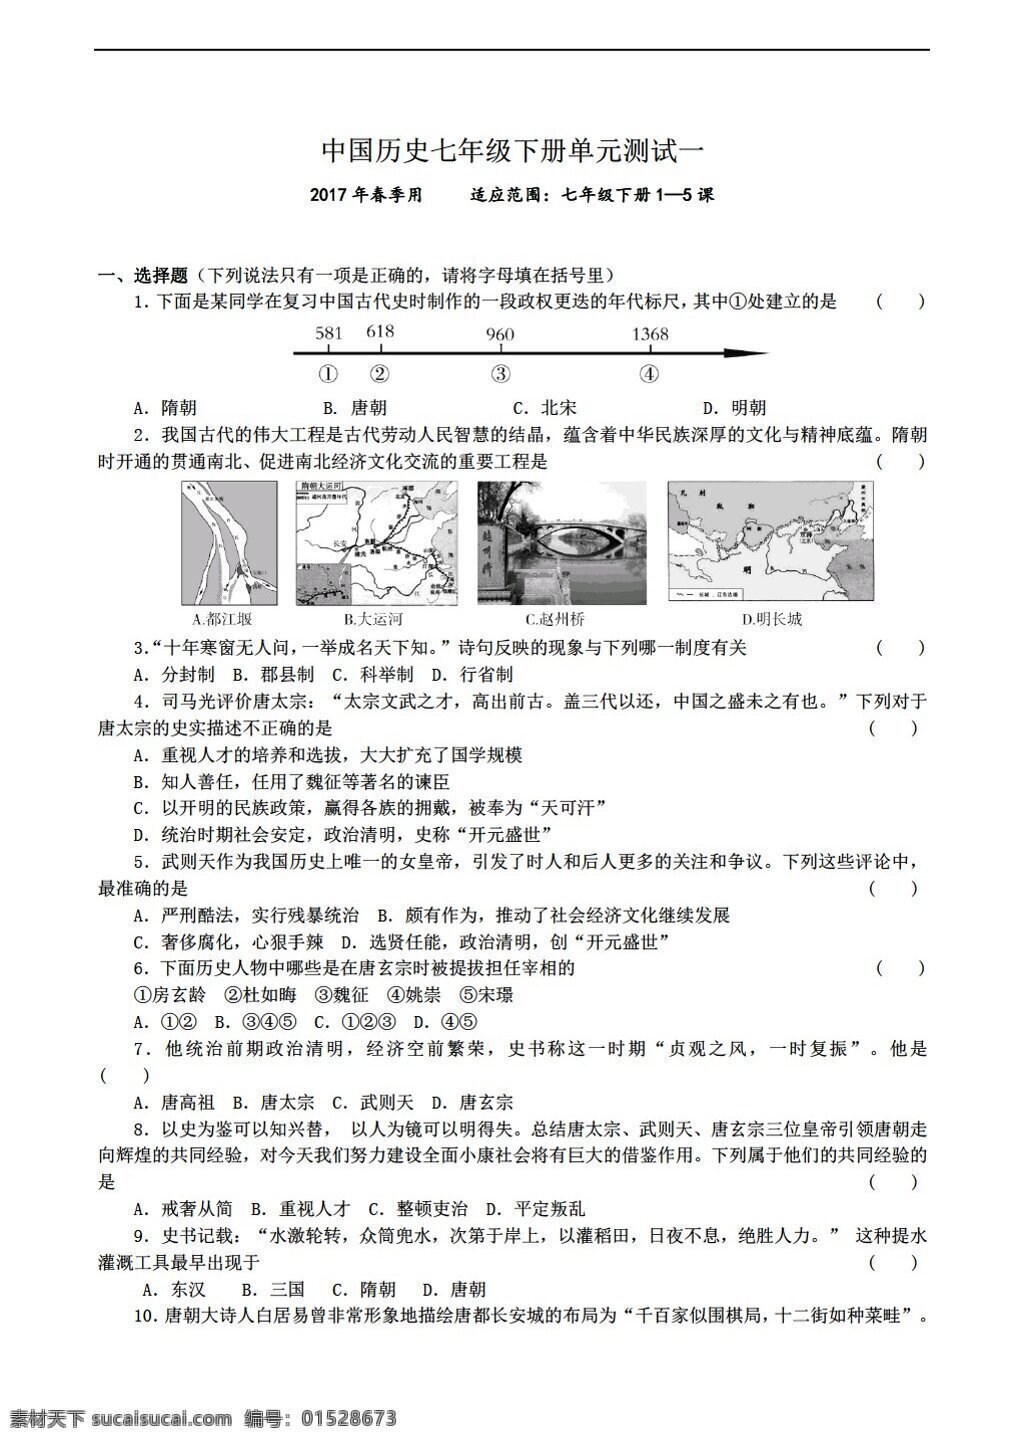 七 年级 下册 历史 中国 繁荣 开放 时代 单元 测试 人教版 七年级下册 试题试卷